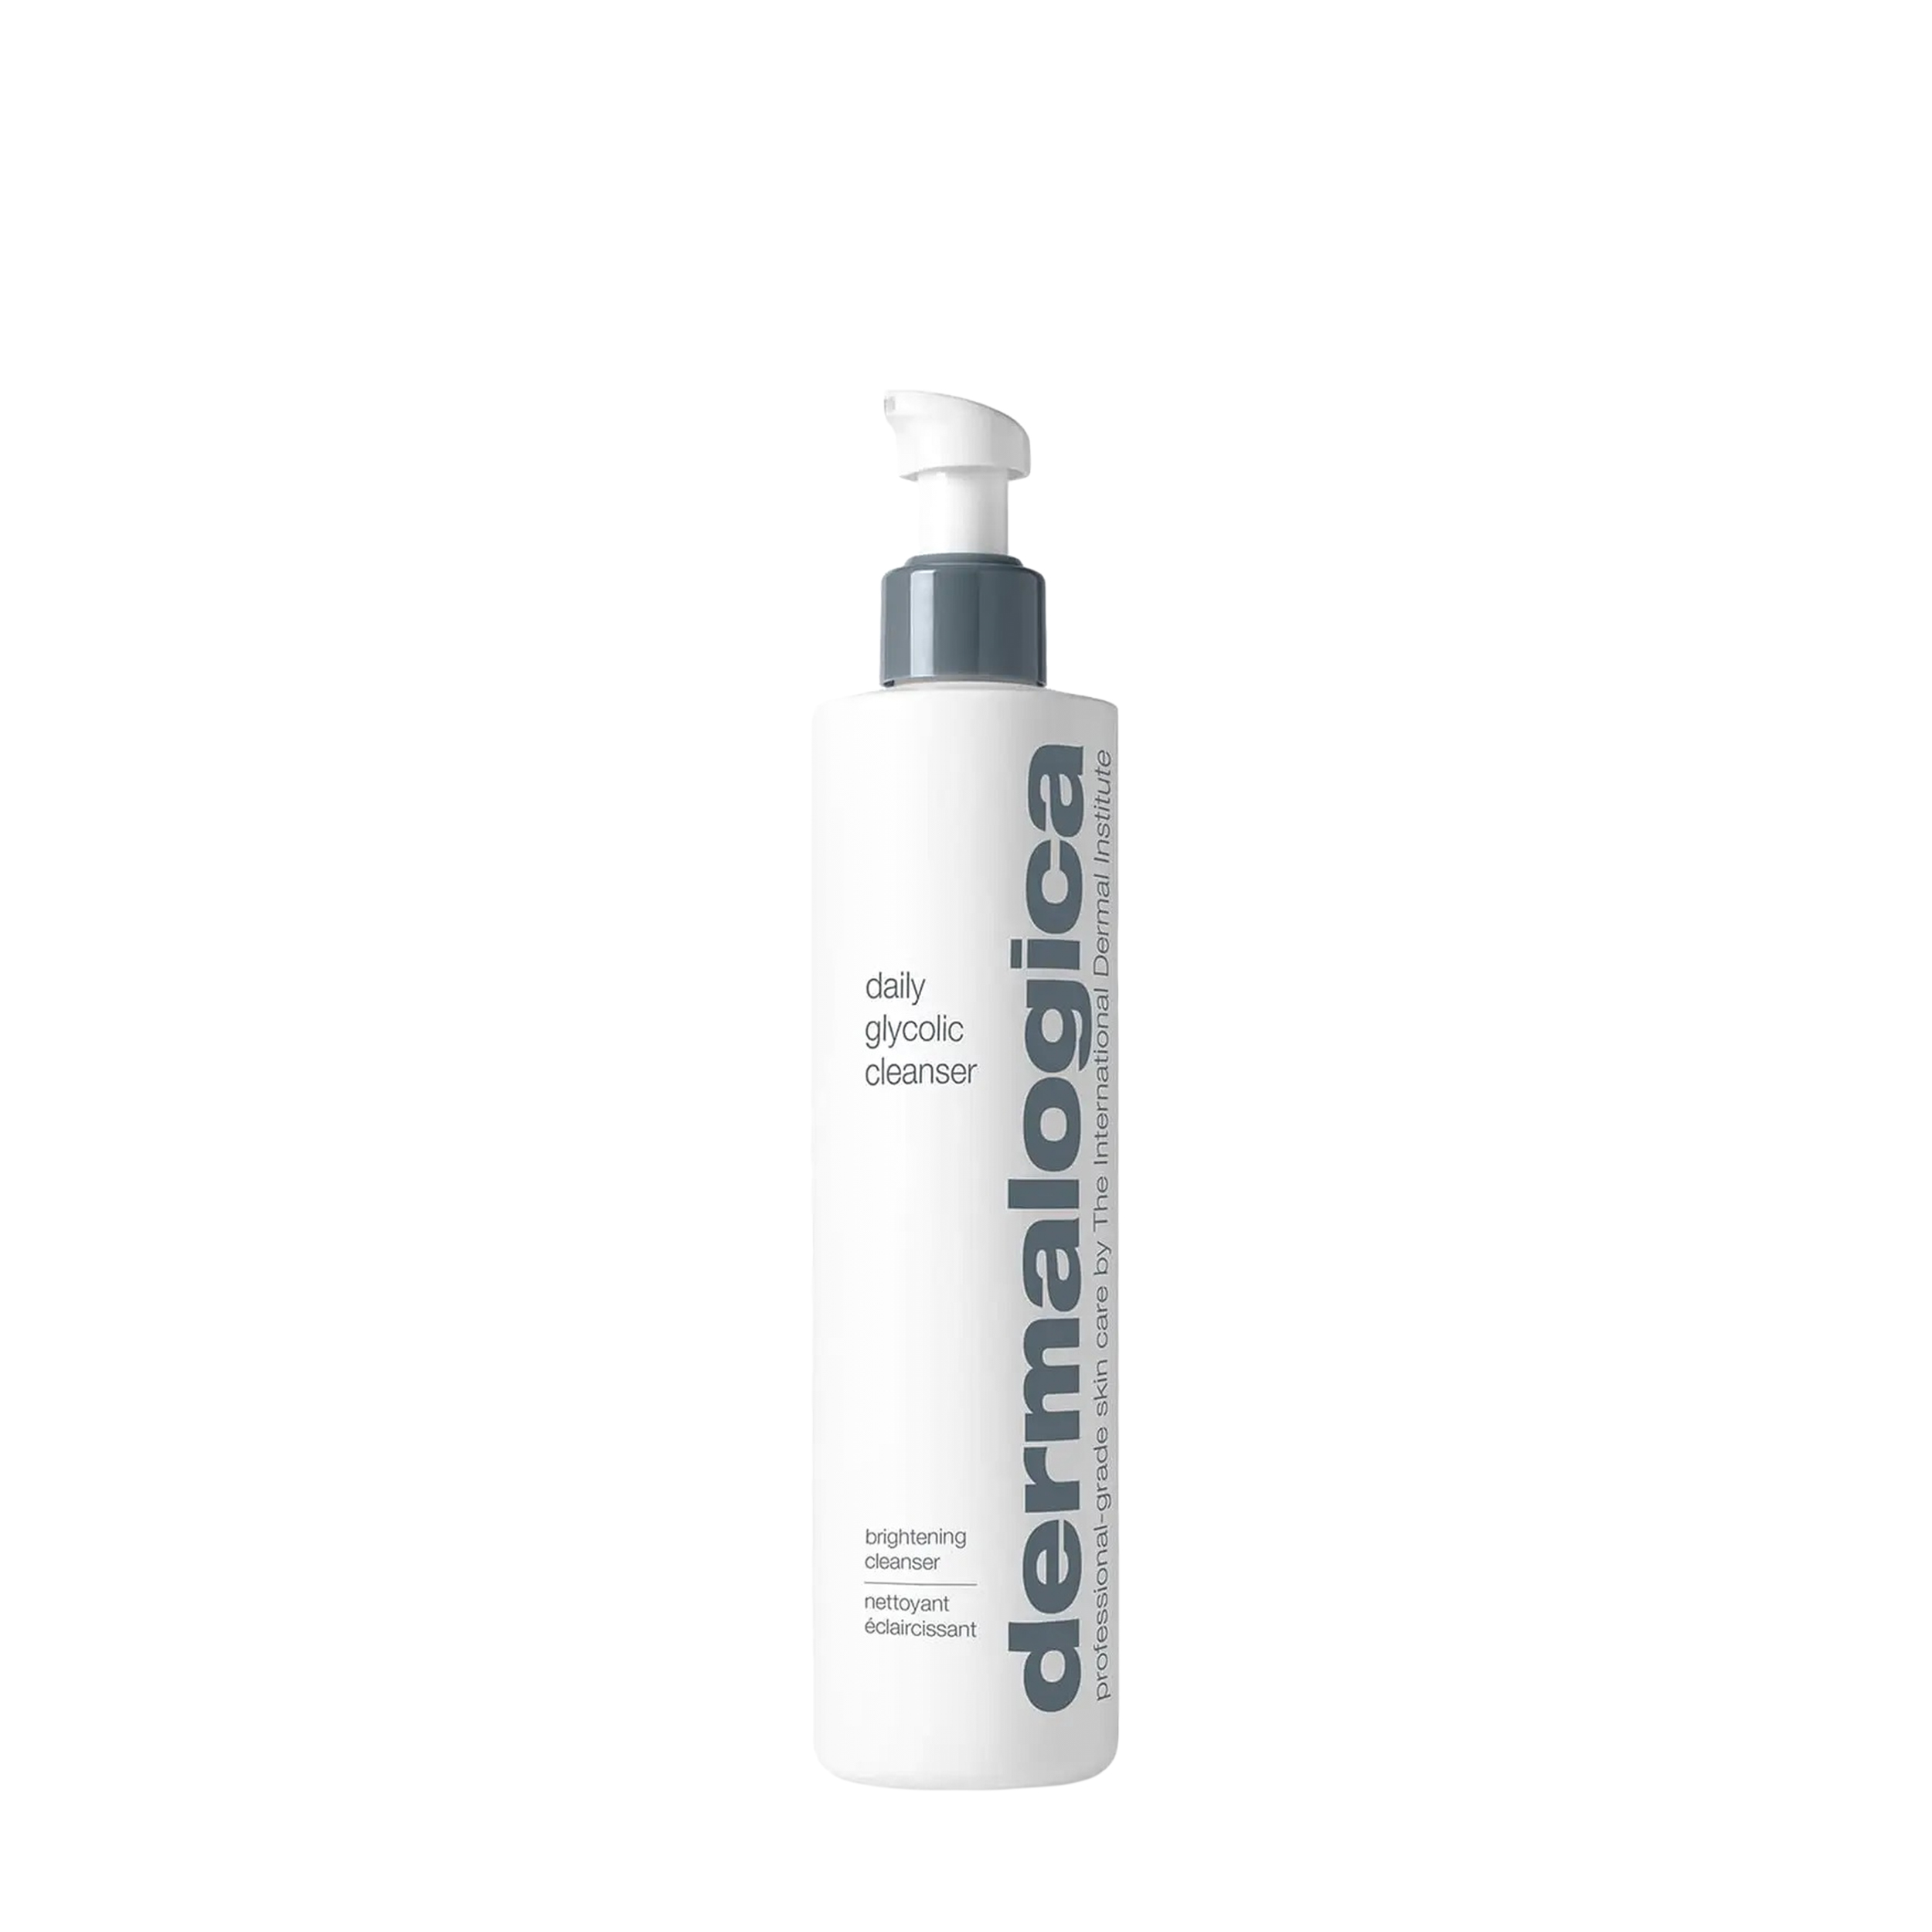 Dermalogica Dermalogica Очищающий гель для лица с гликолевой кислотой Daily Glycolic Cleanser 295 мл